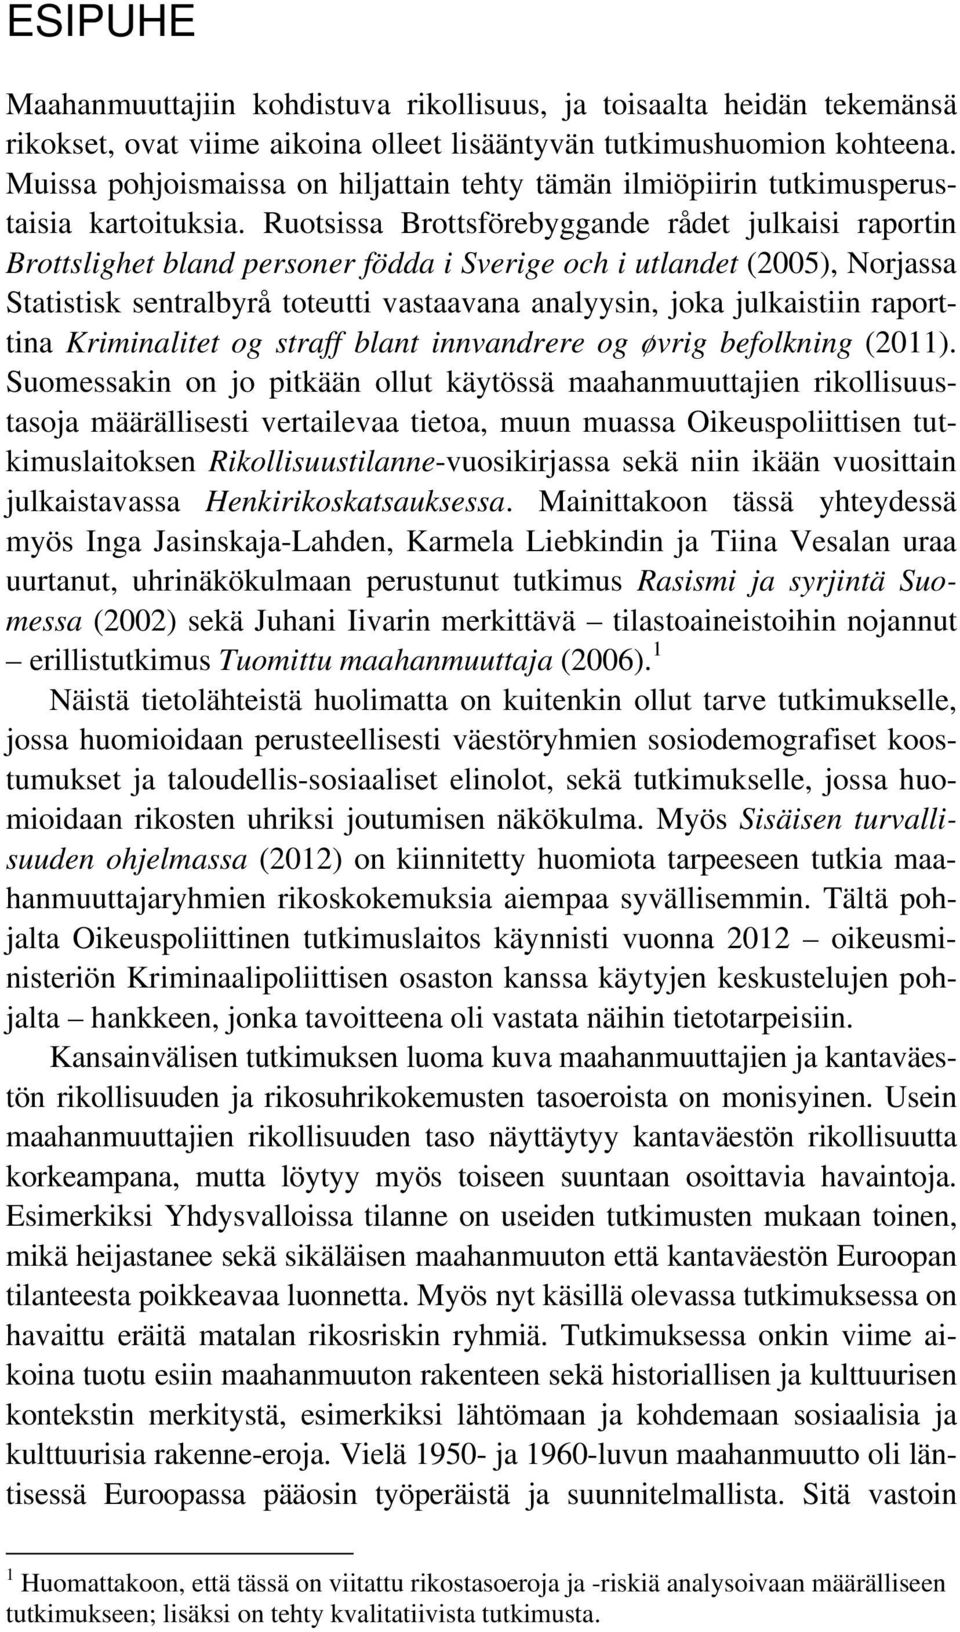 Ruotsissa Brottsförebyggande rådet julkaisi raportin Brottslighet bland personer födda i Sverige och i utlandet (2005), Norjassa Statistisk sentralbyrå toteutti vastaavana analyysin, joka julkaistiin